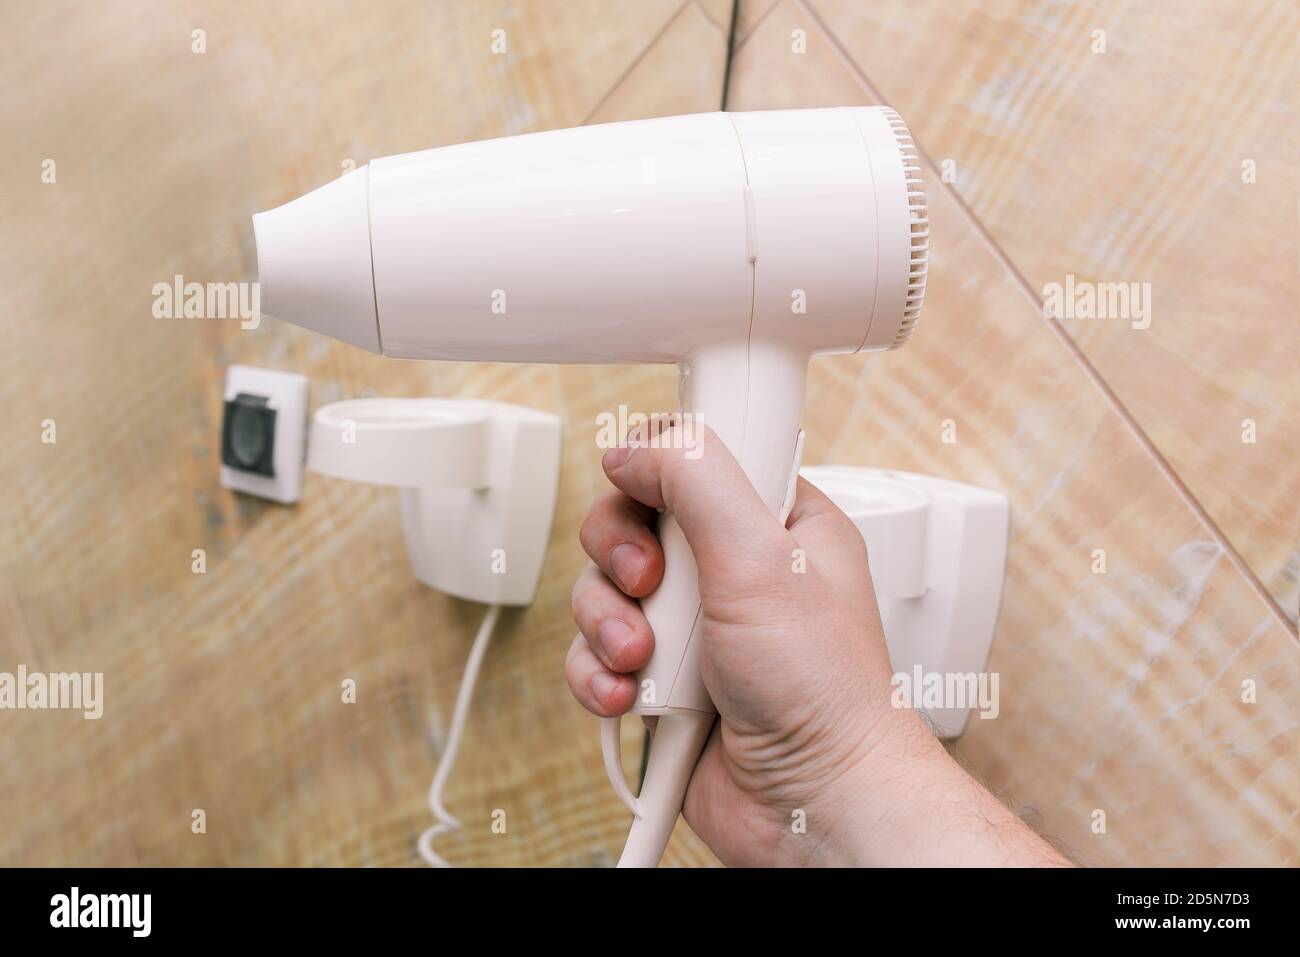 Weißer Haartrockner in Nahaufnahme. Ein Mann hält einen Plastiktrockner in der Hand vor einem Hintergrund aus Spiegeln und Marmorfliesen. Interieur eines Badezimmers, Schönheit Stockfoto